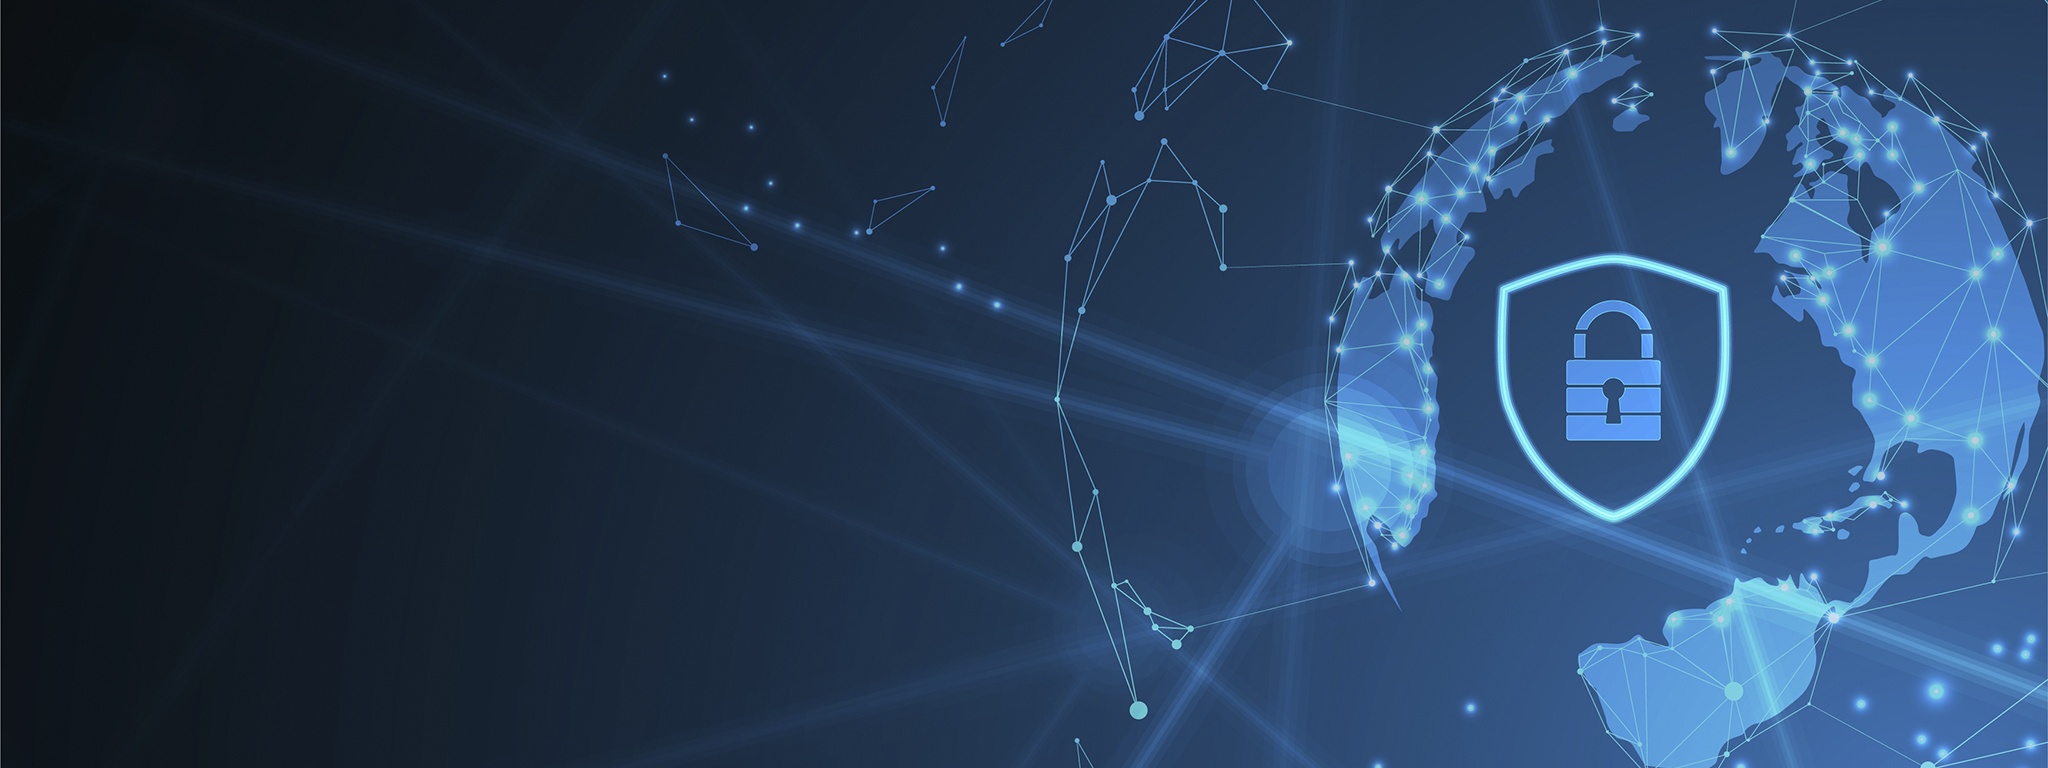 鍵と盾のある地球の上のインターネットデジタル回線を描いた青いイラスト